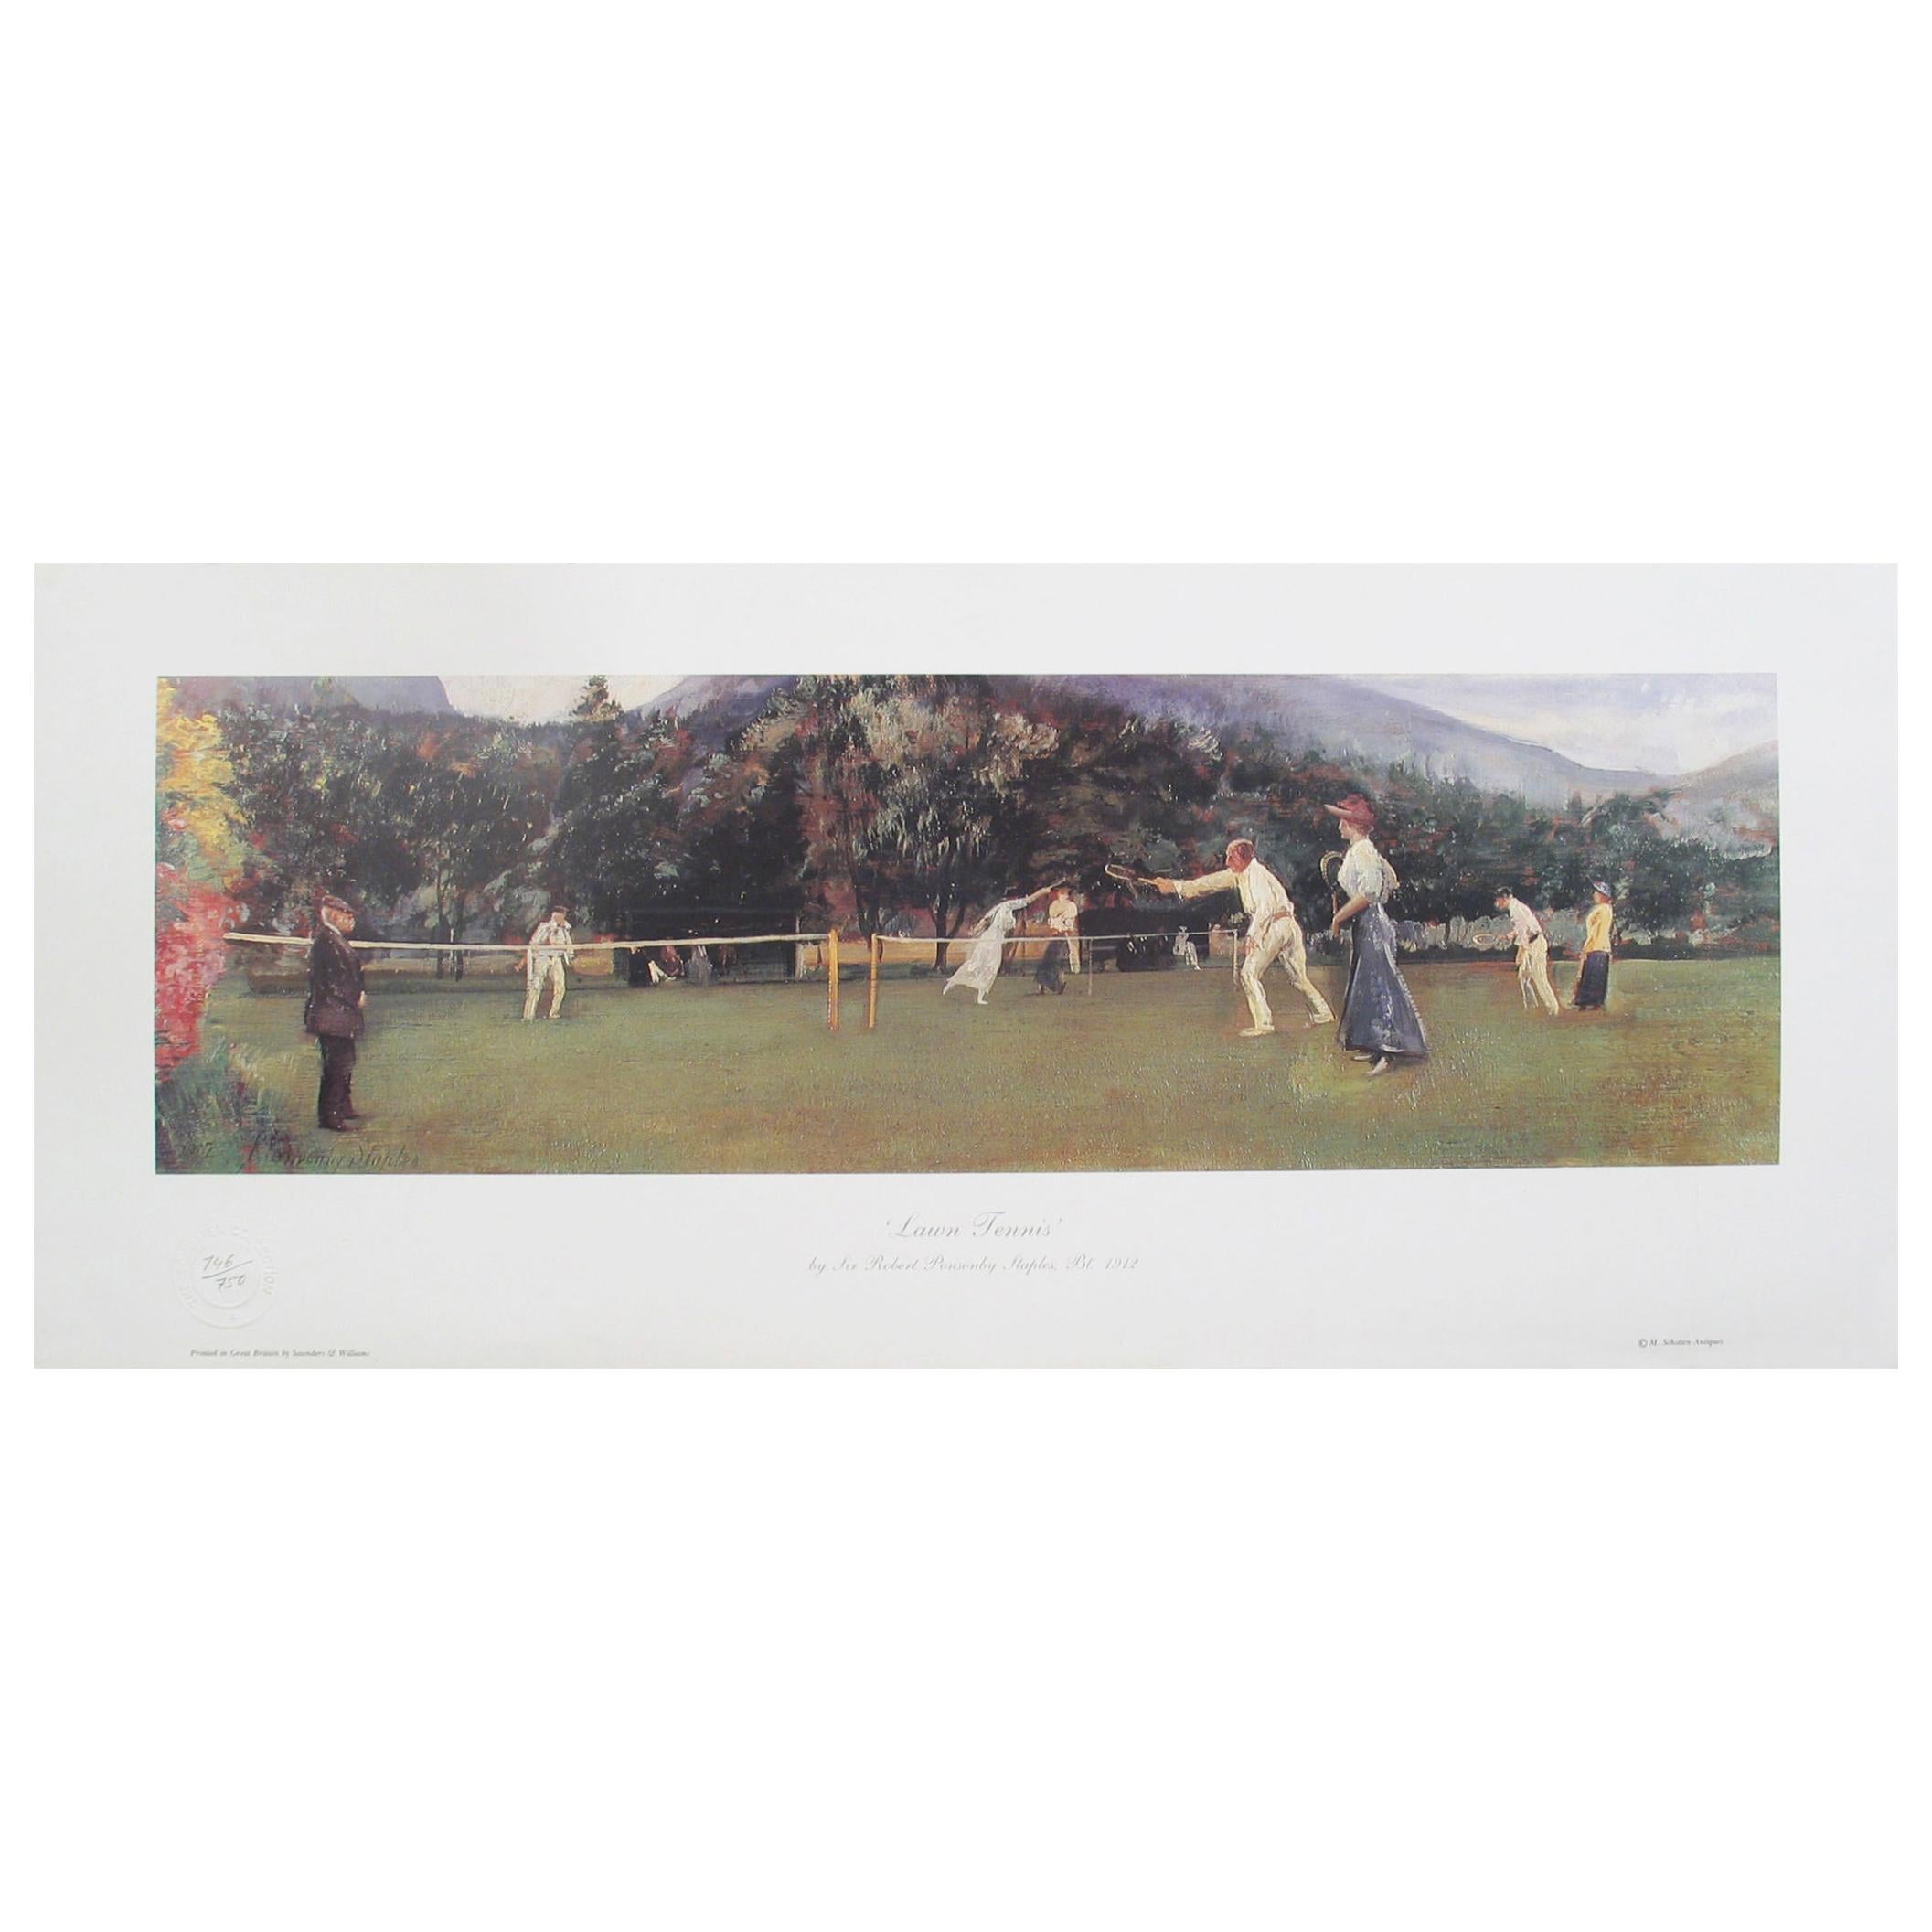 Lawn Tennis Print by Sir Robert Ponsonby Staples